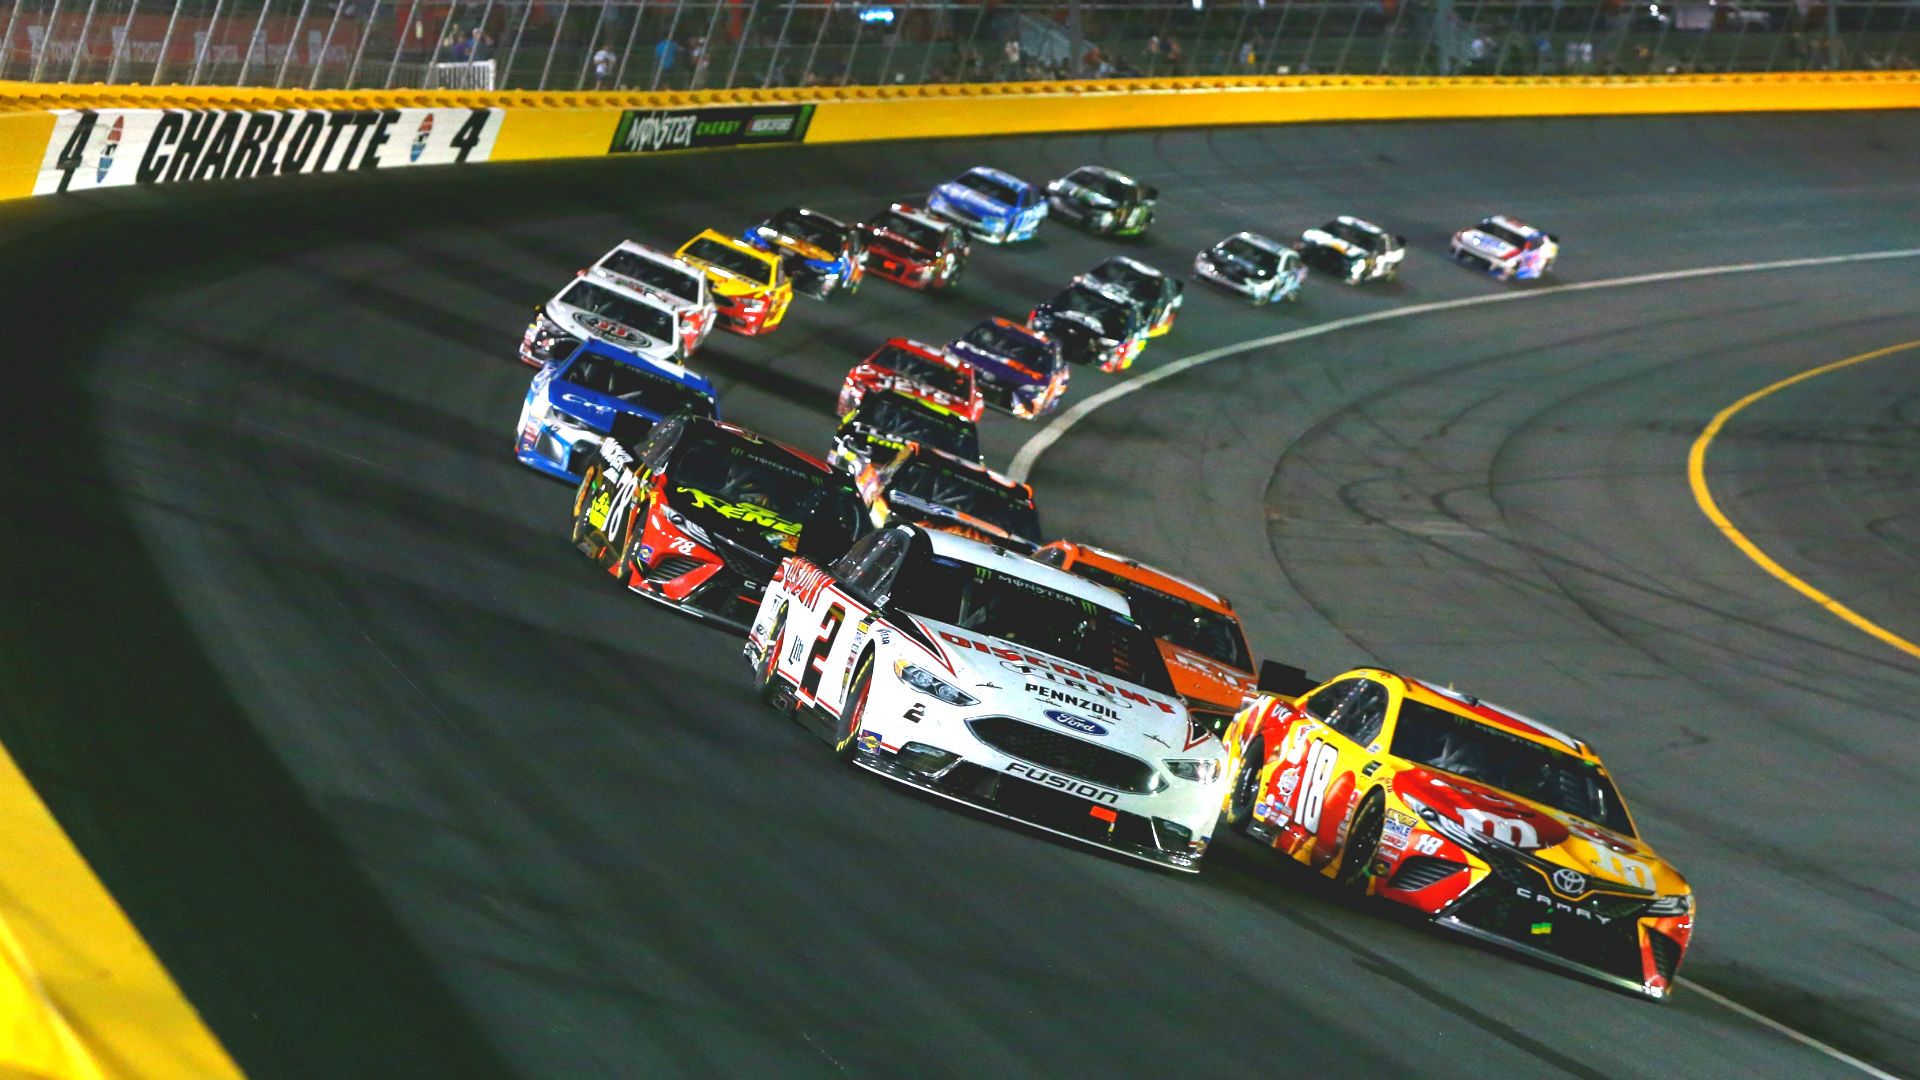 Photo from the 2018 - 2019 NASCAR season